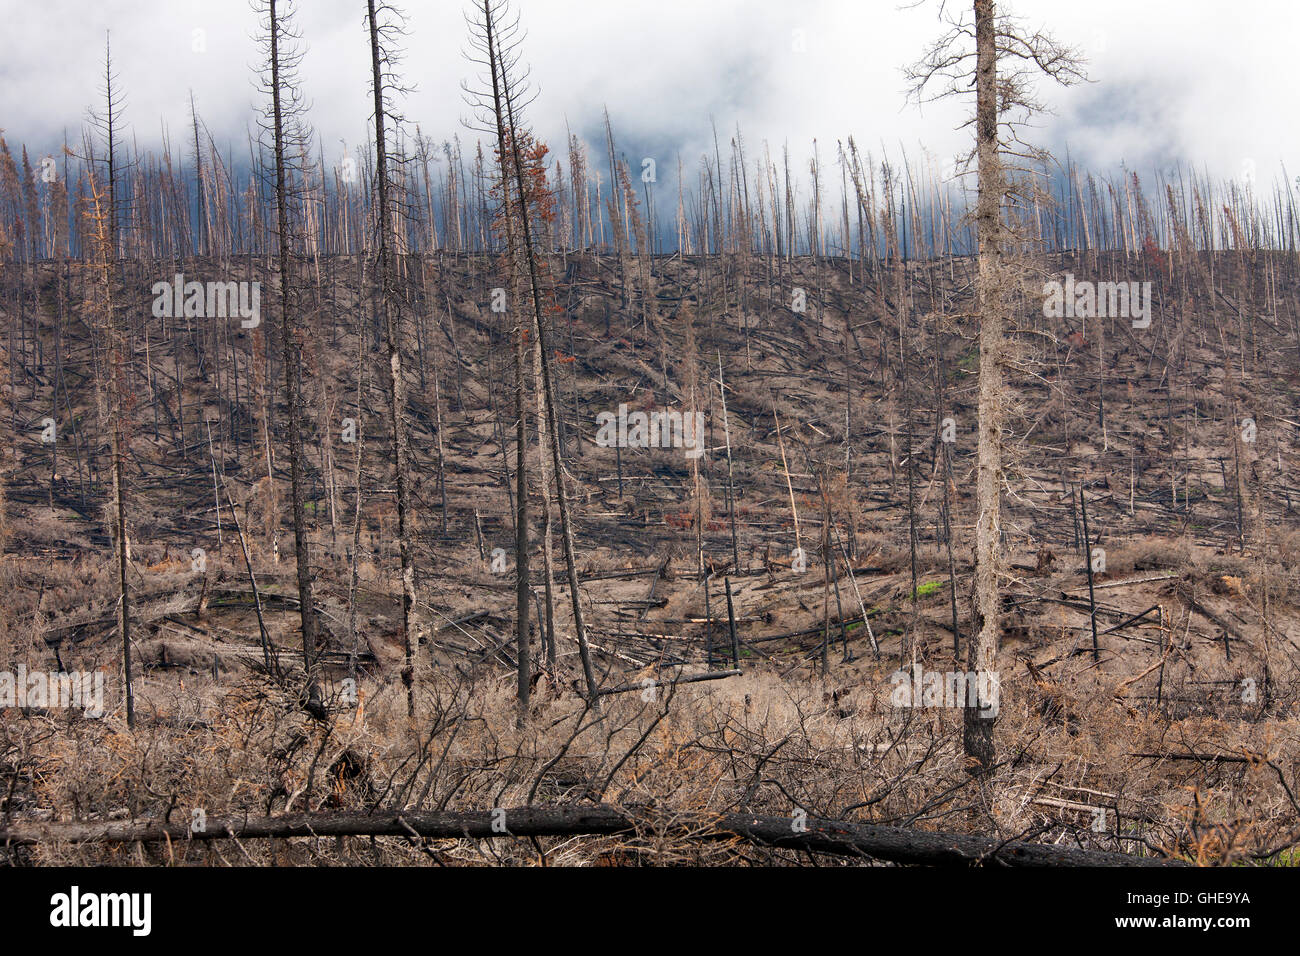 Carbonizzati tronchi d albero bruciato dal fuoco della Foresta, Parco Nazionale di Jasper, Alberta, Canada Foto Stock